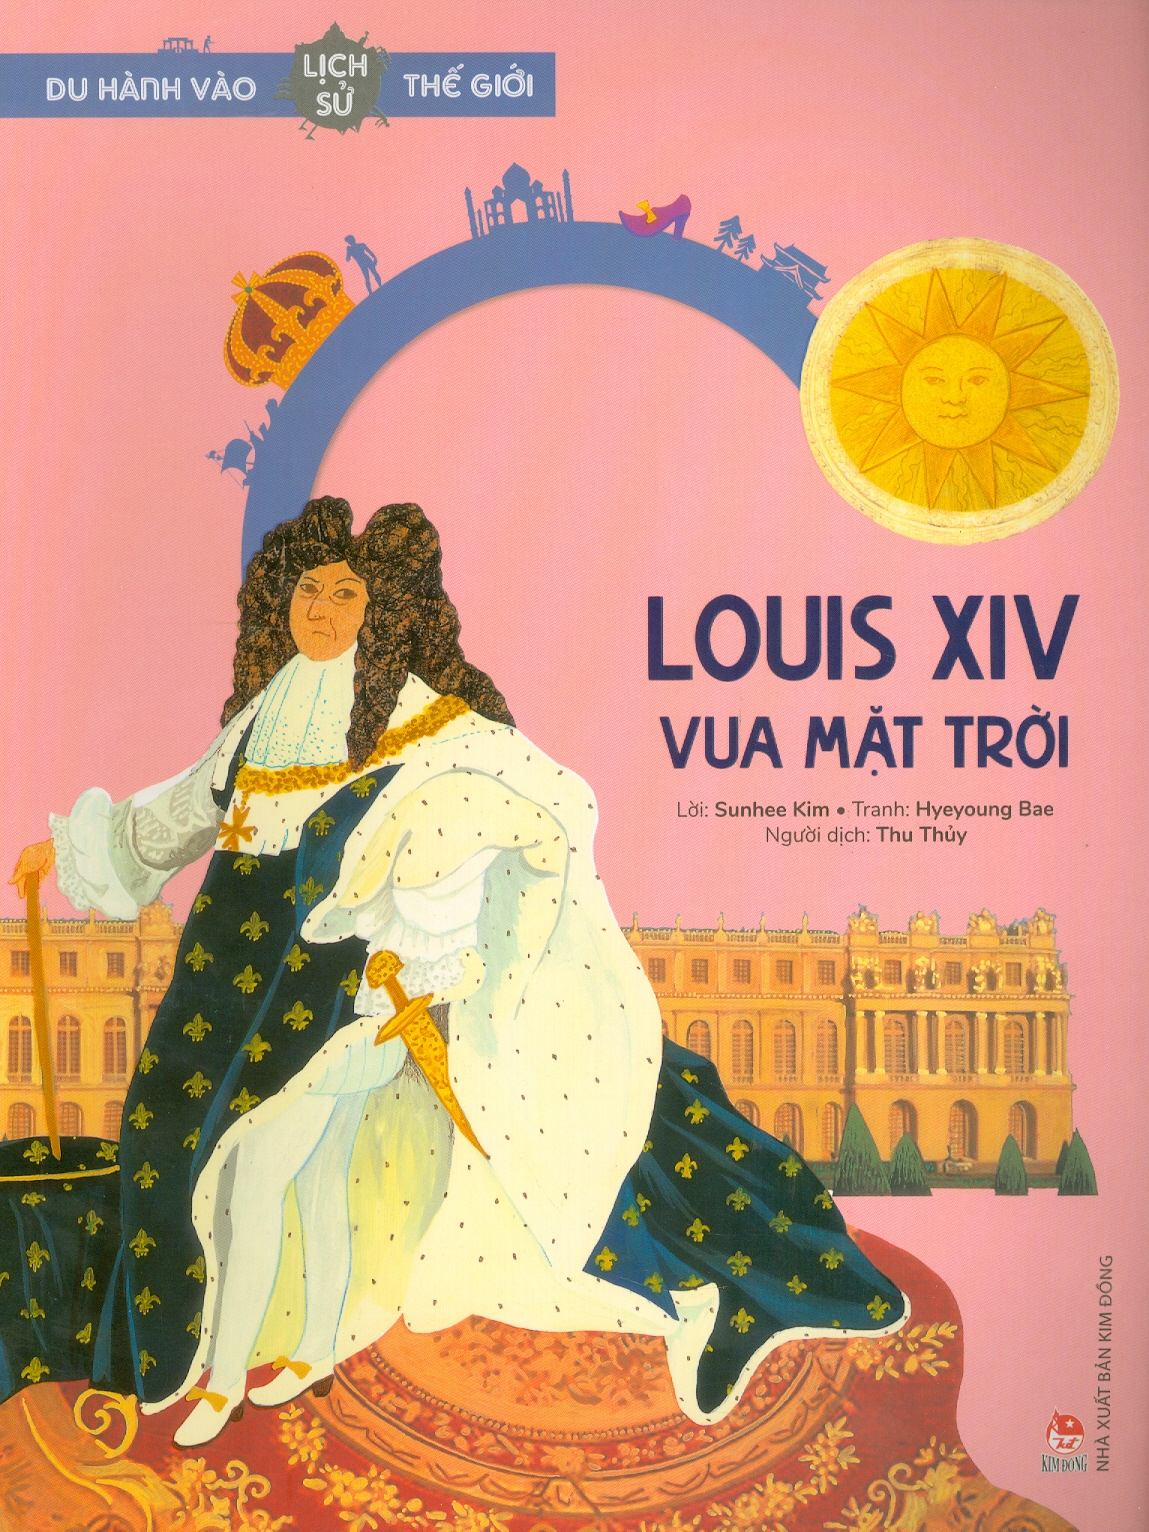 Du Hành Vào Lịch Sử Thế Giới - Louis XIV: Vua Mặt Trời